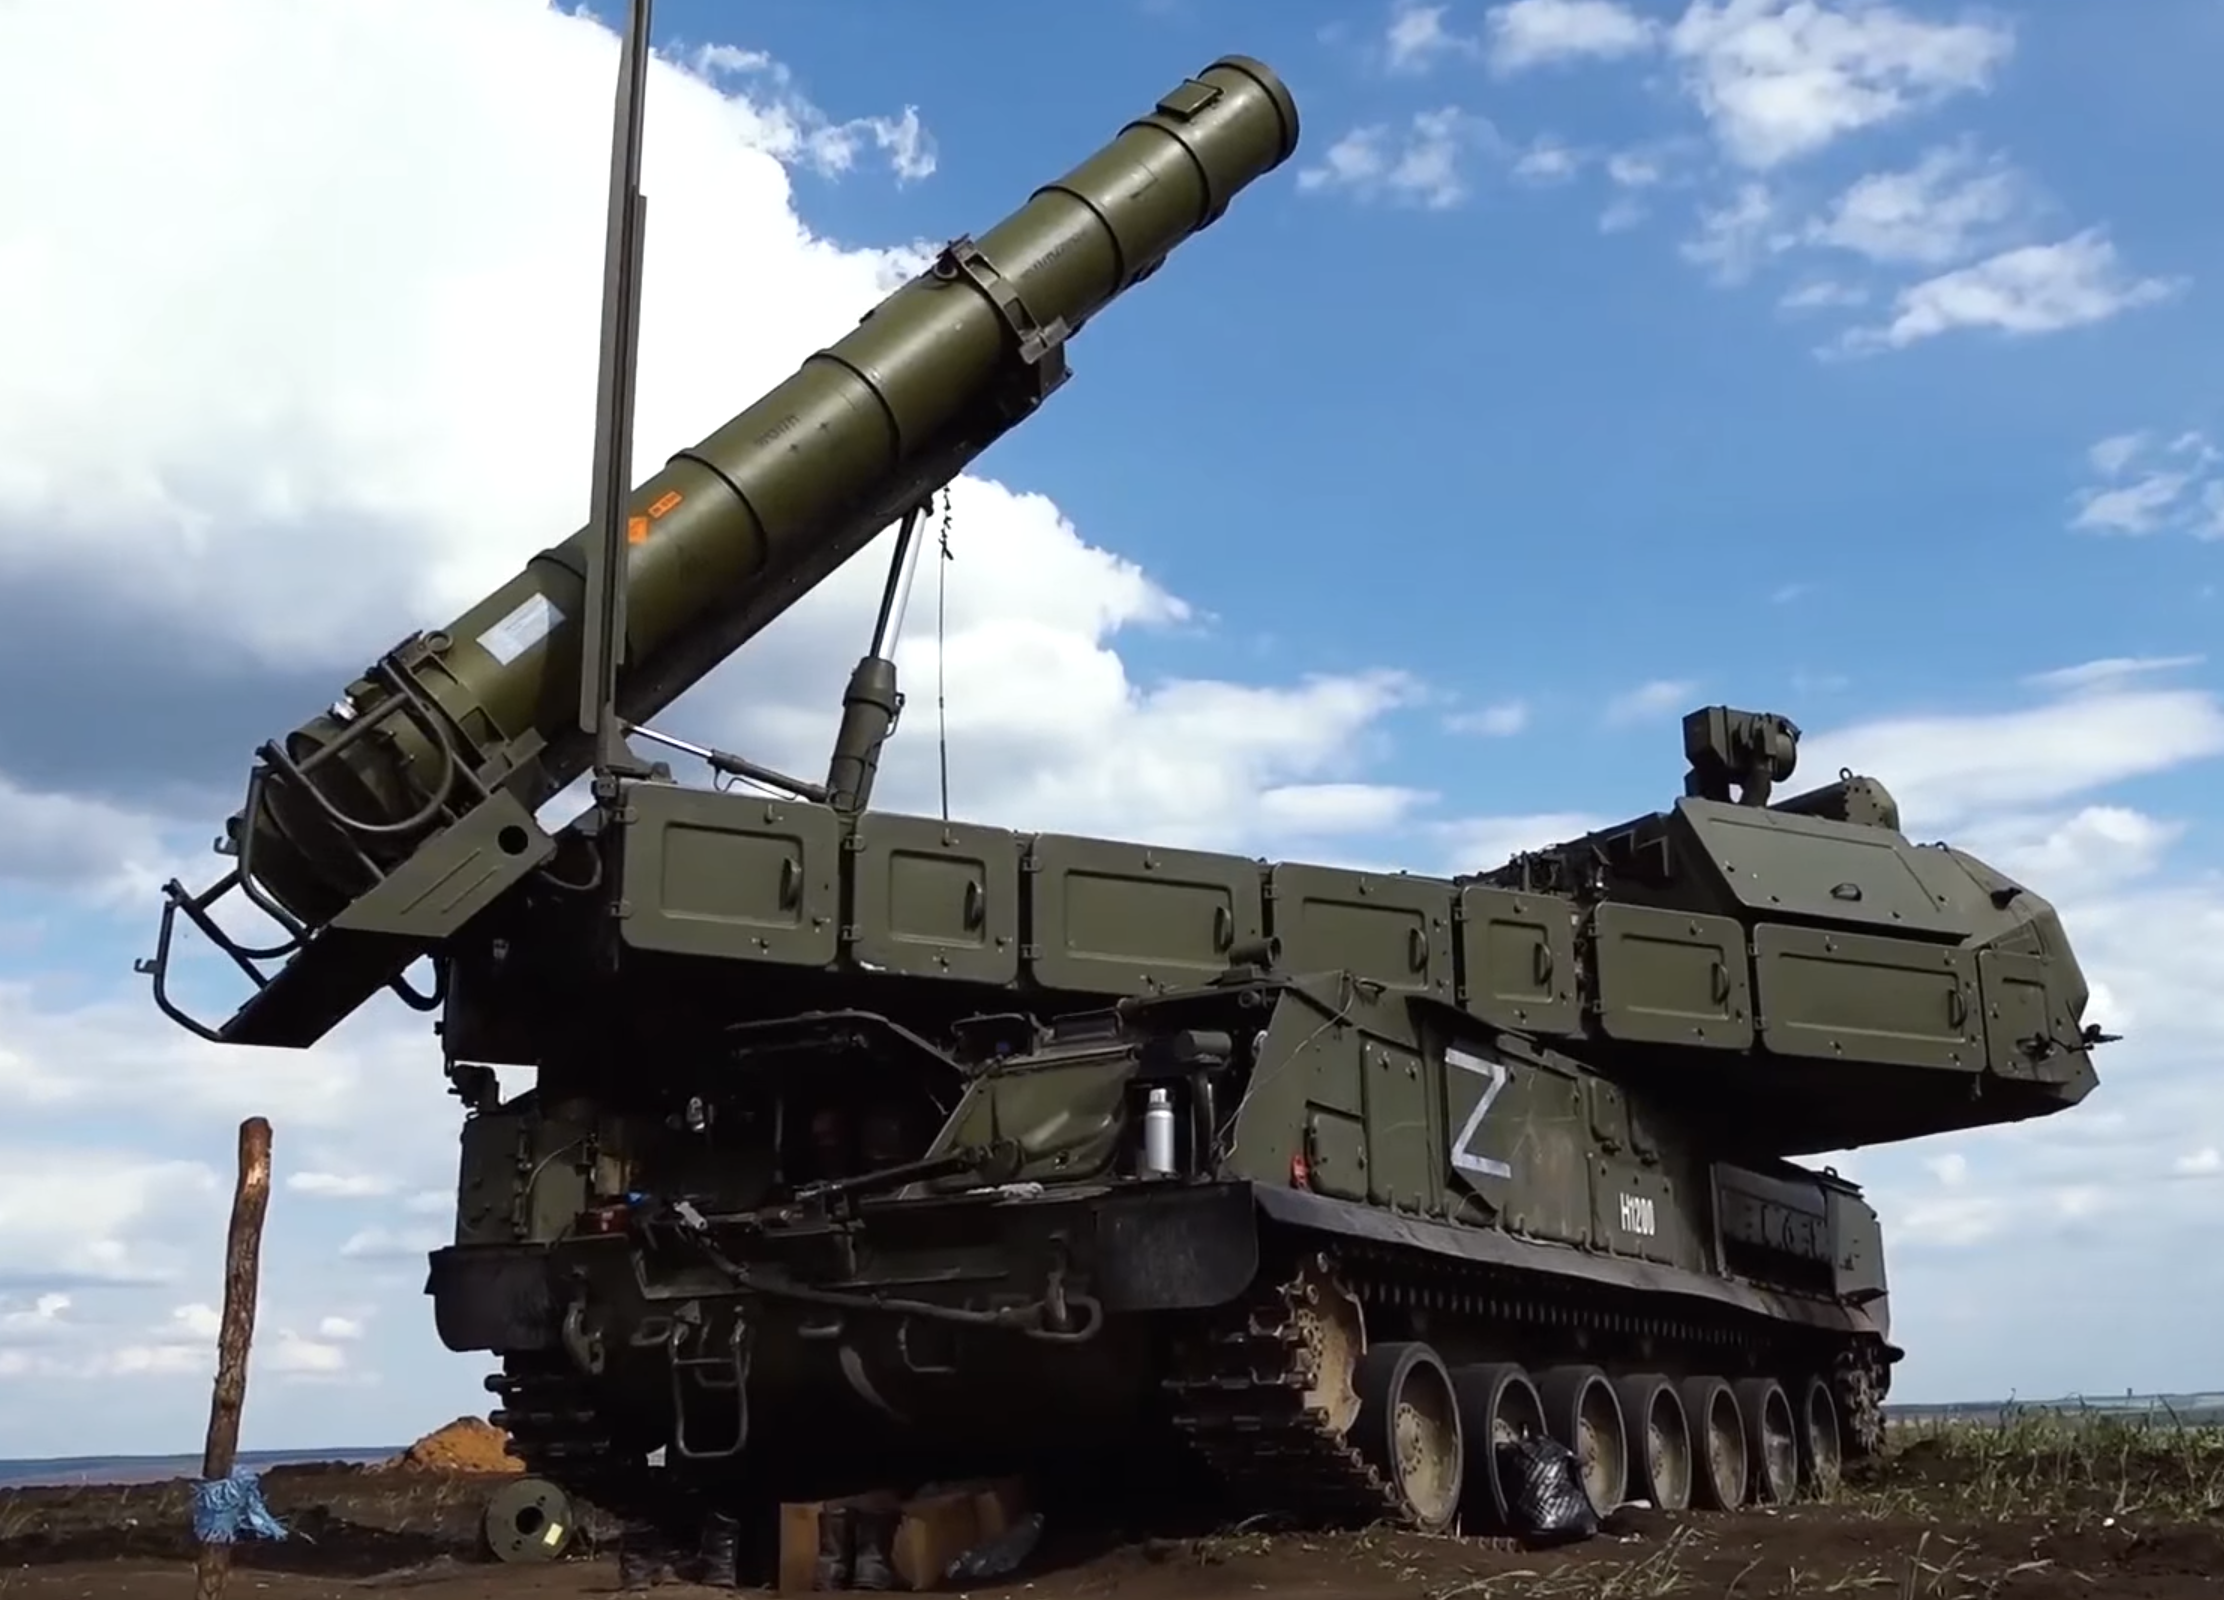 俄国防部24日公布俄军防空部队执行作战任务时的视频截图，视频中展示了“山毛榉-M3”和其他雷达设备等武器装备